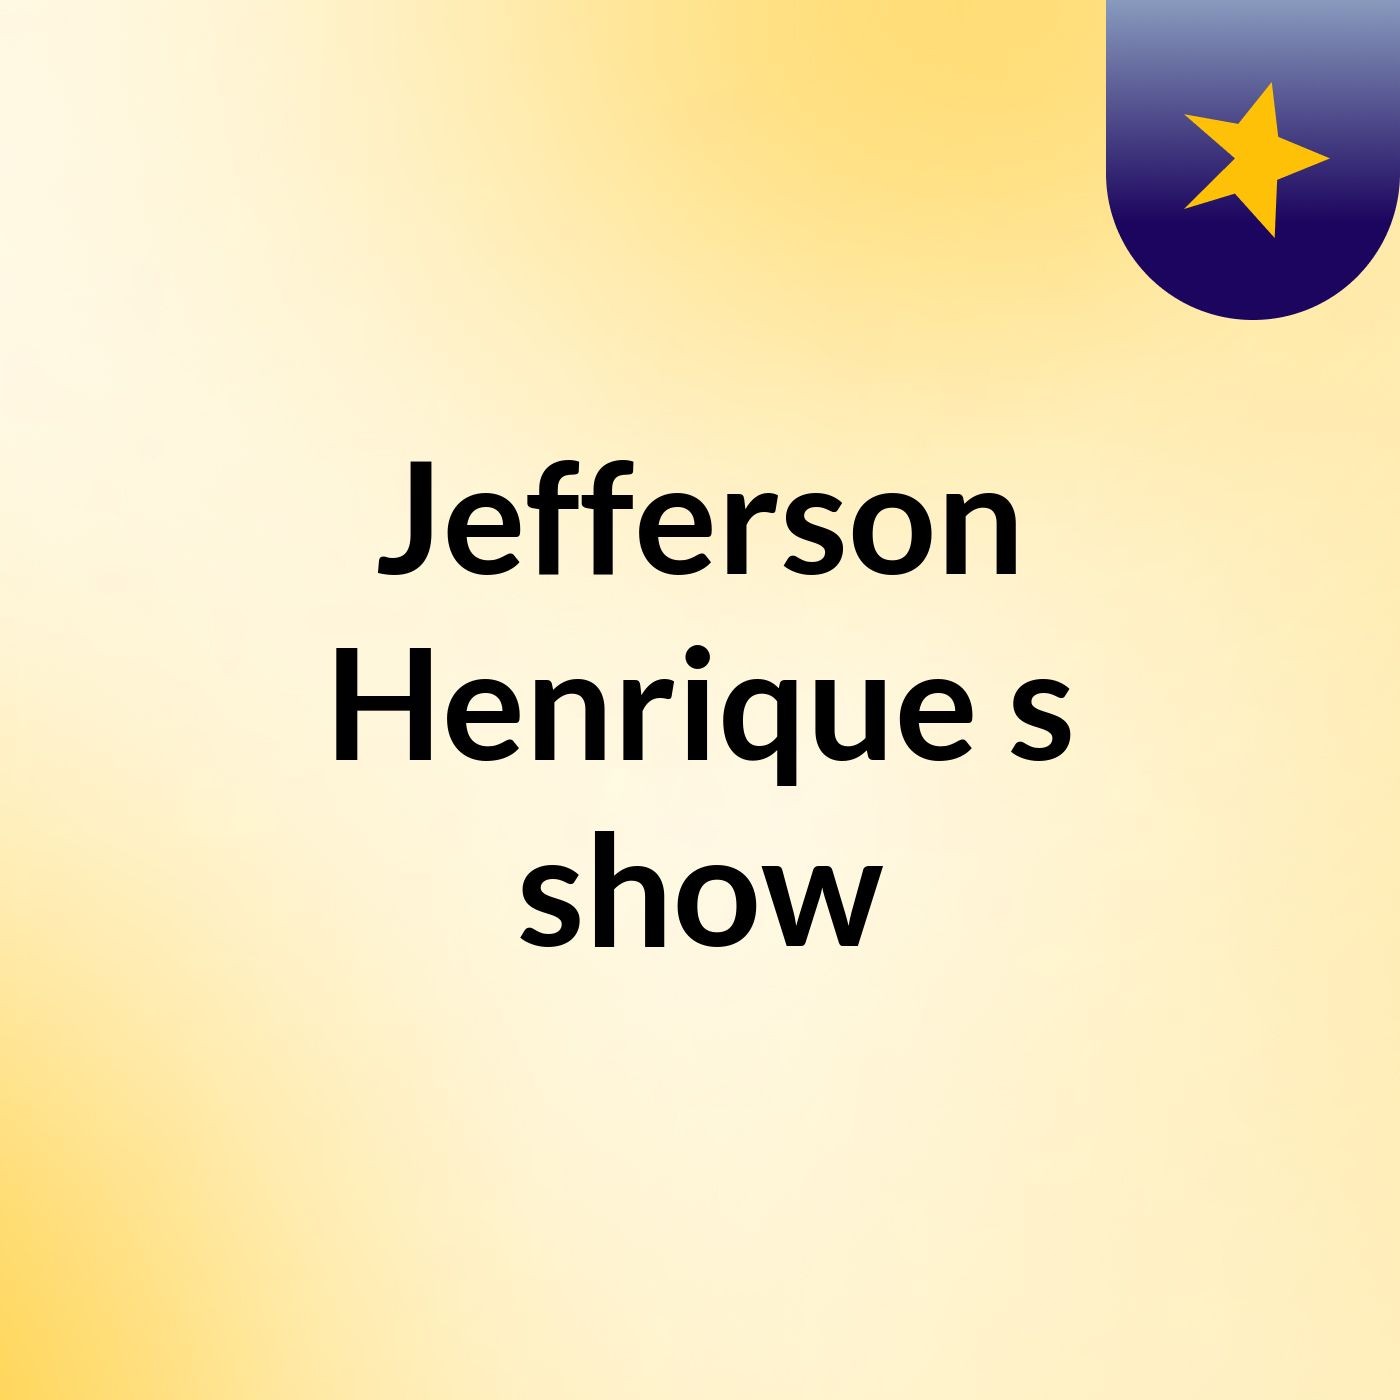 Jefferson Henrique's show